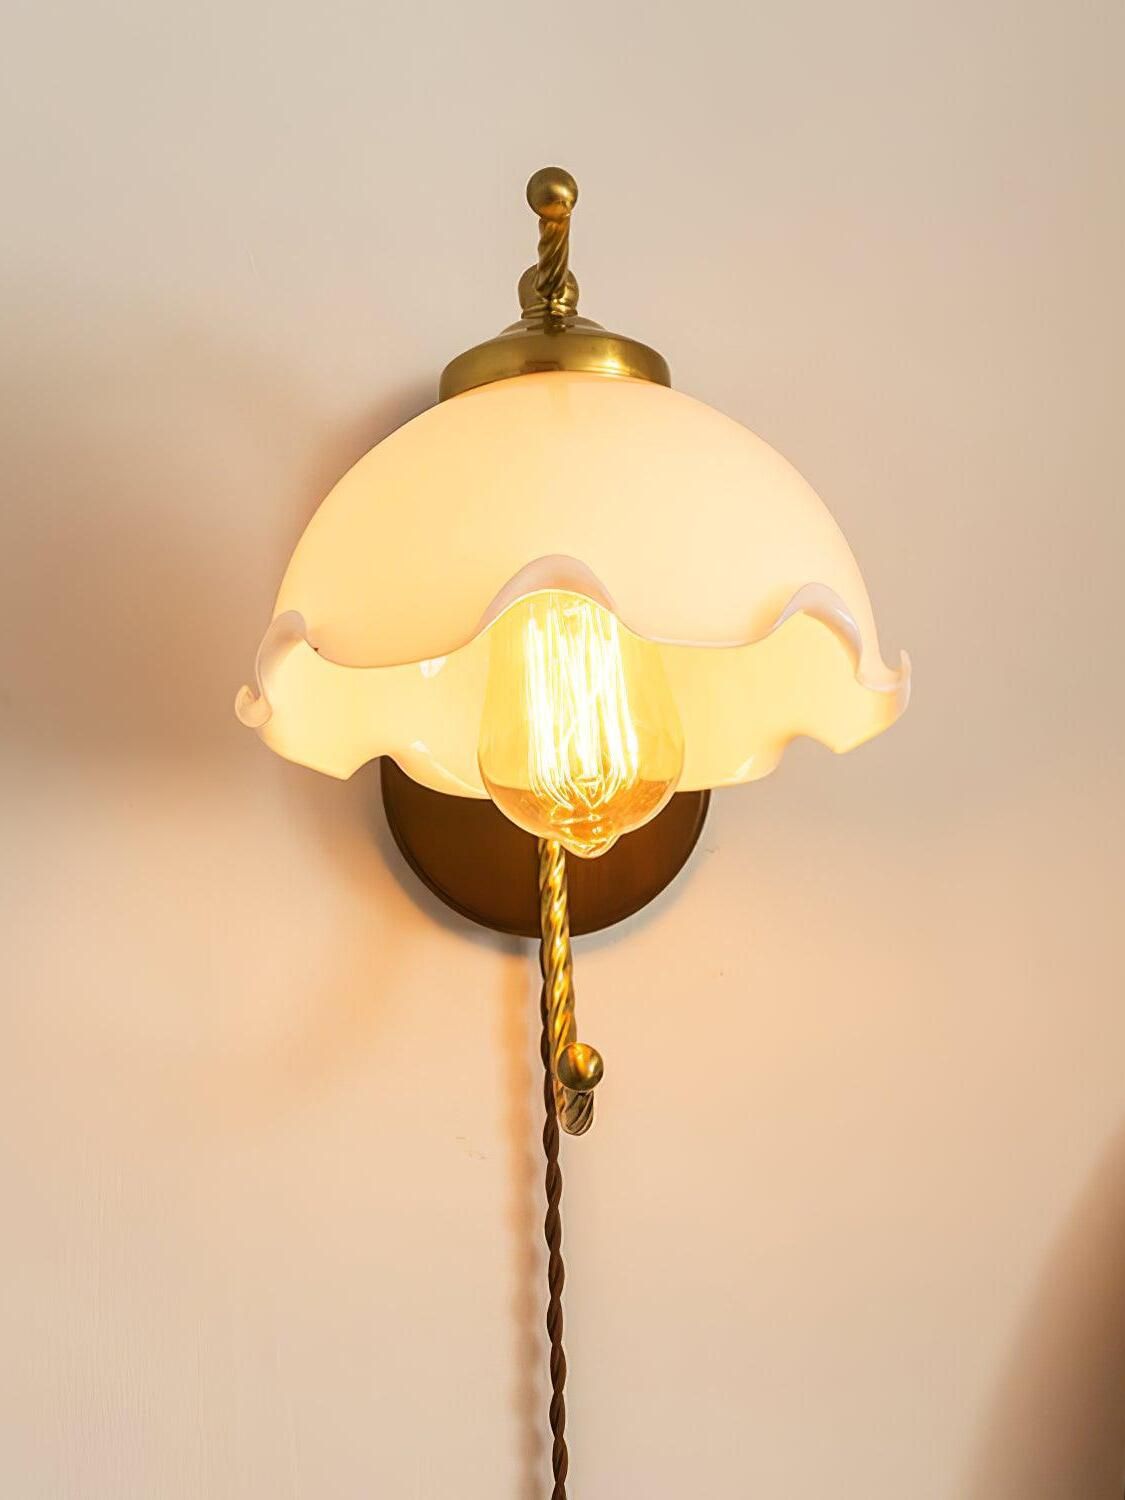 Chandelier Wall Lamps Elegant Lighting Fixtures for Your Walls